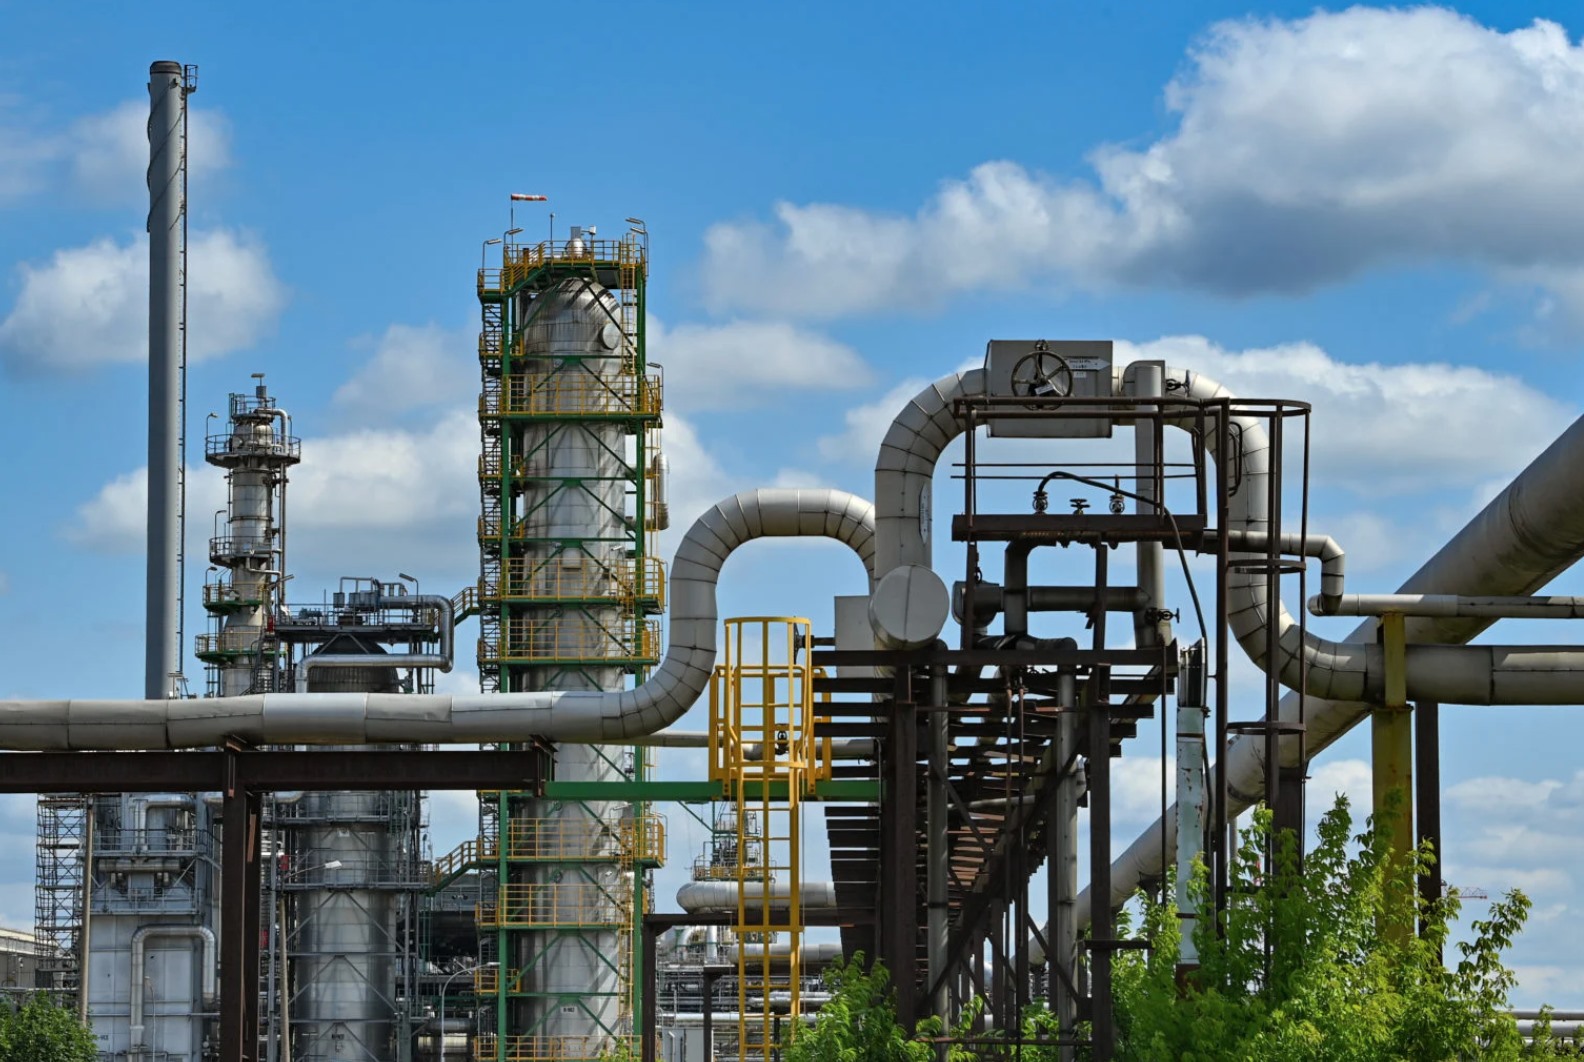 Cơ sở chế biến dầu thô nhà máy lọc dầu PCK-Raffinerie ở Schwedt. Chính phủ Đức nắm quyền kiểm soát nhà máy từng thuộc tập đoàn dầu khí Nga Rosneft này. Ảnh: AFP/DPA